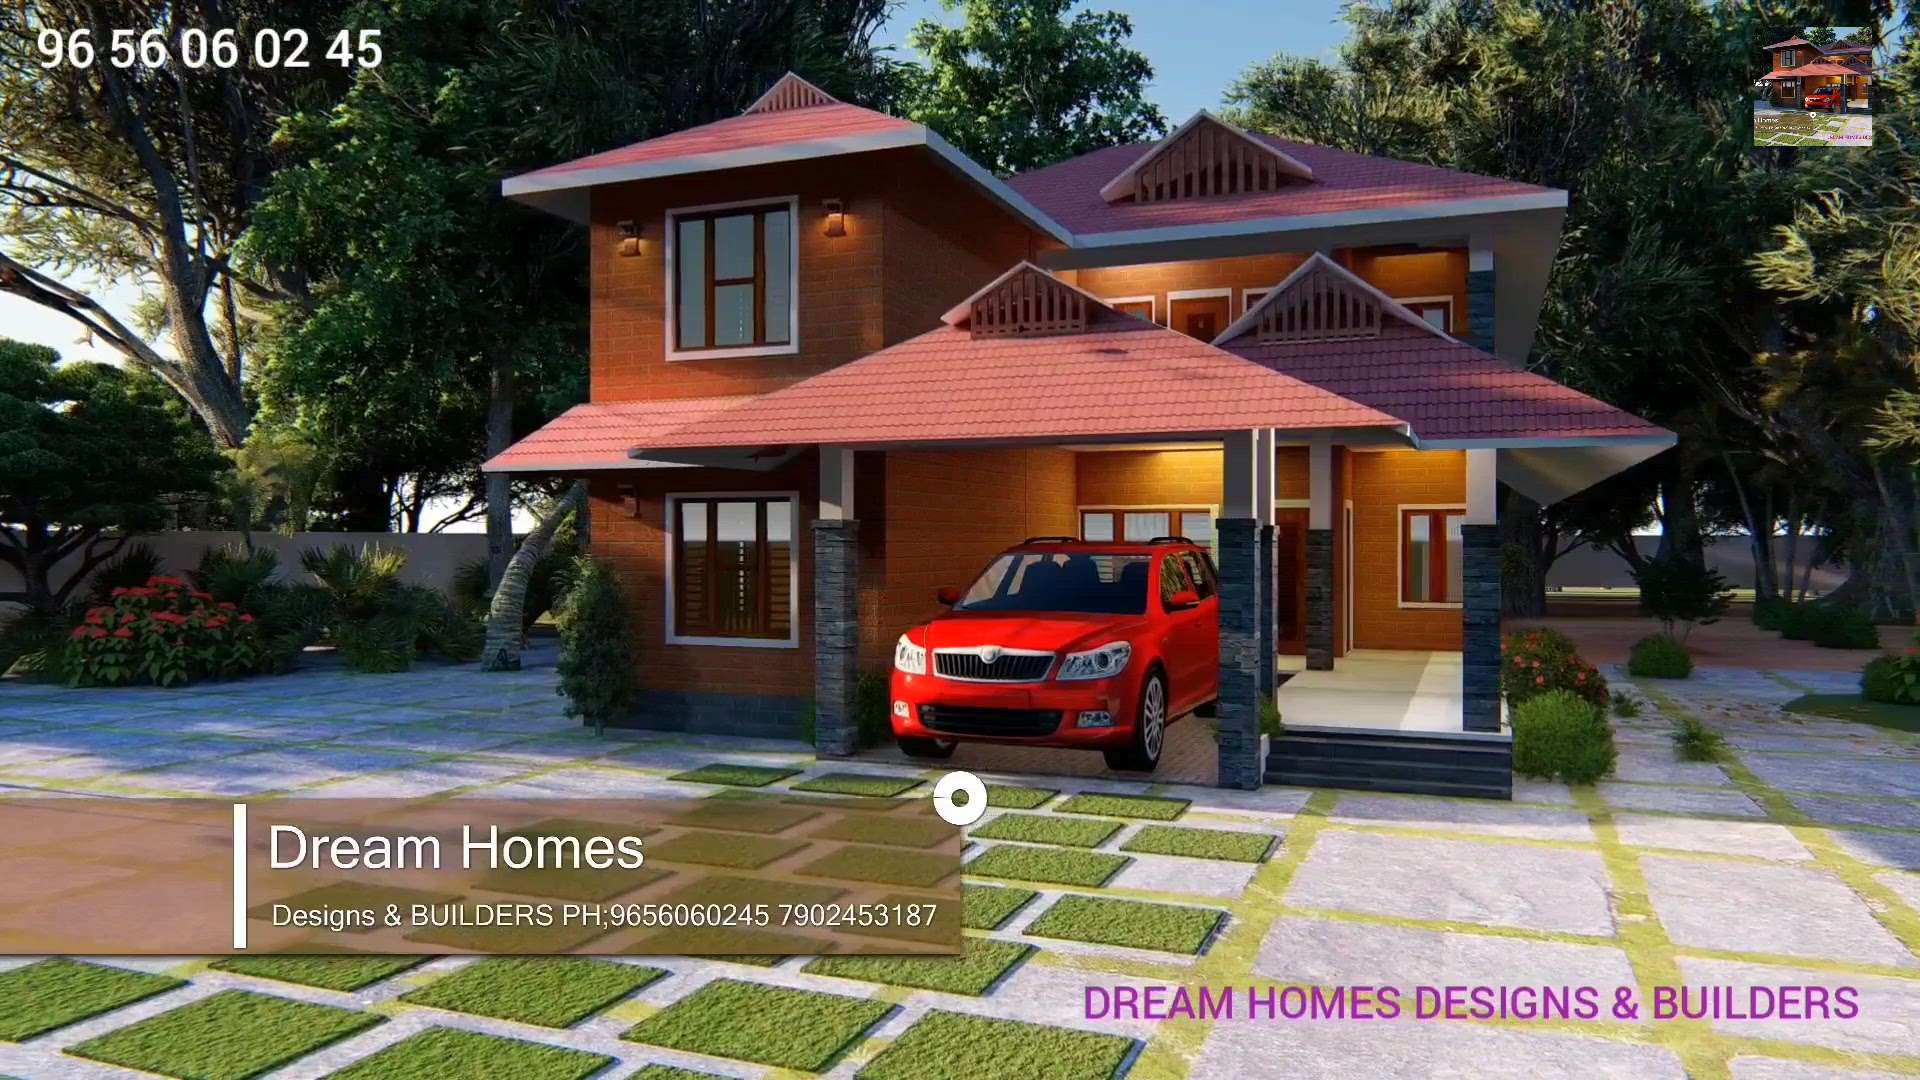 🎉ശുഭരാത്രി🎉
"DREAM HOMES DESIGNS & BUILDERS "
You Dream It, We Have It'

       "Kerala's No 1 Architect for Traditional Homes" 

A beautiful traditional structure  will be completed only with the presence of a good Architect and pure Vasthu Sastra.

Dream Homes will always be there whenever we are needed.

No Compromise on Quality, Sincerity & Efficiency.

We are providing service to all over India 
No Compromise on Quality, Sincerity & Efficiency.

http://www.dreamhomesdesigns.in
For more info 
9656060245
7902453187